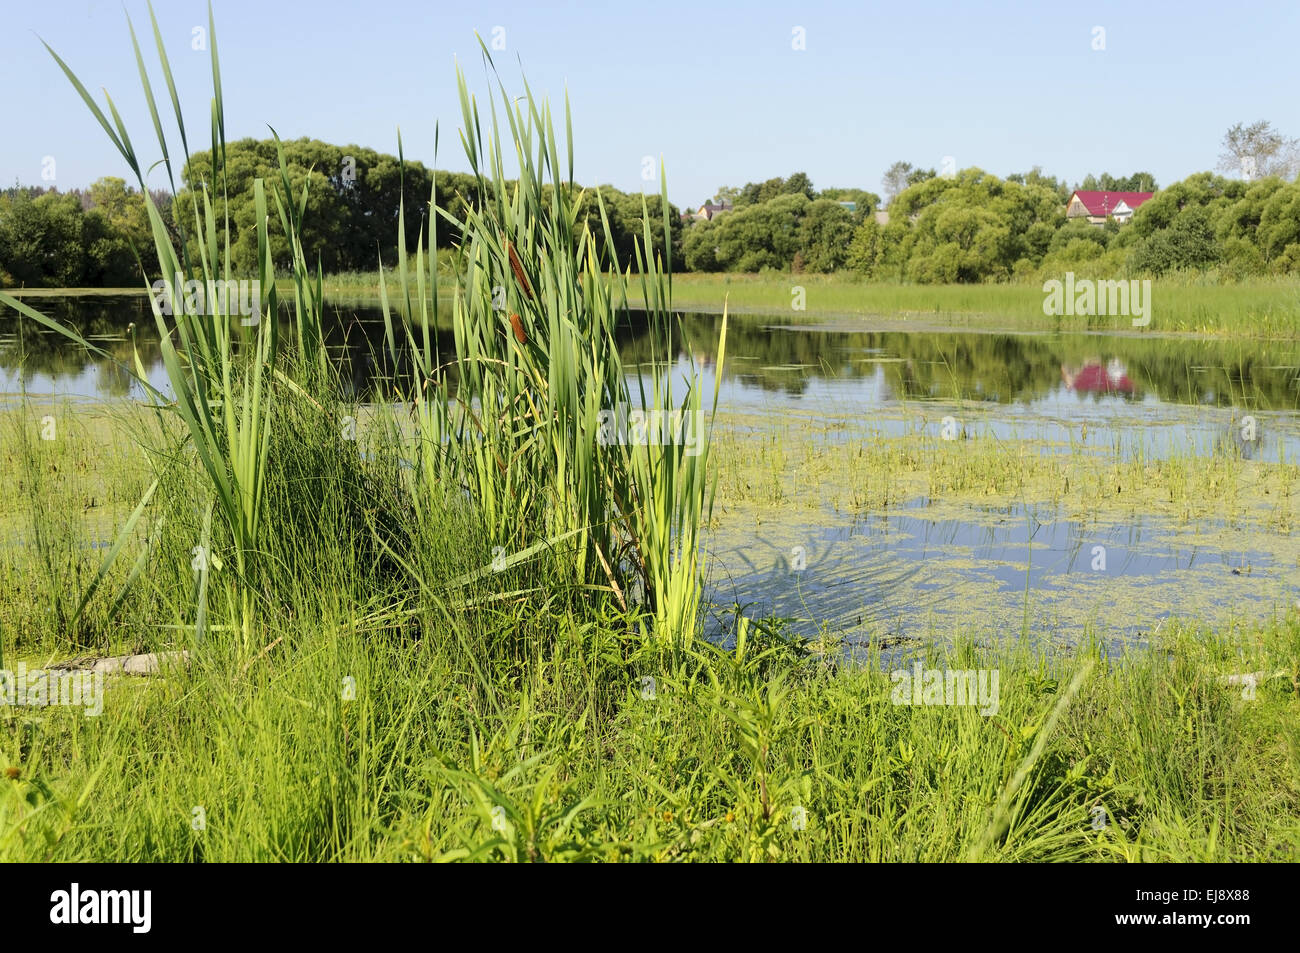 Lake overgrown with duckweed Stock Photo